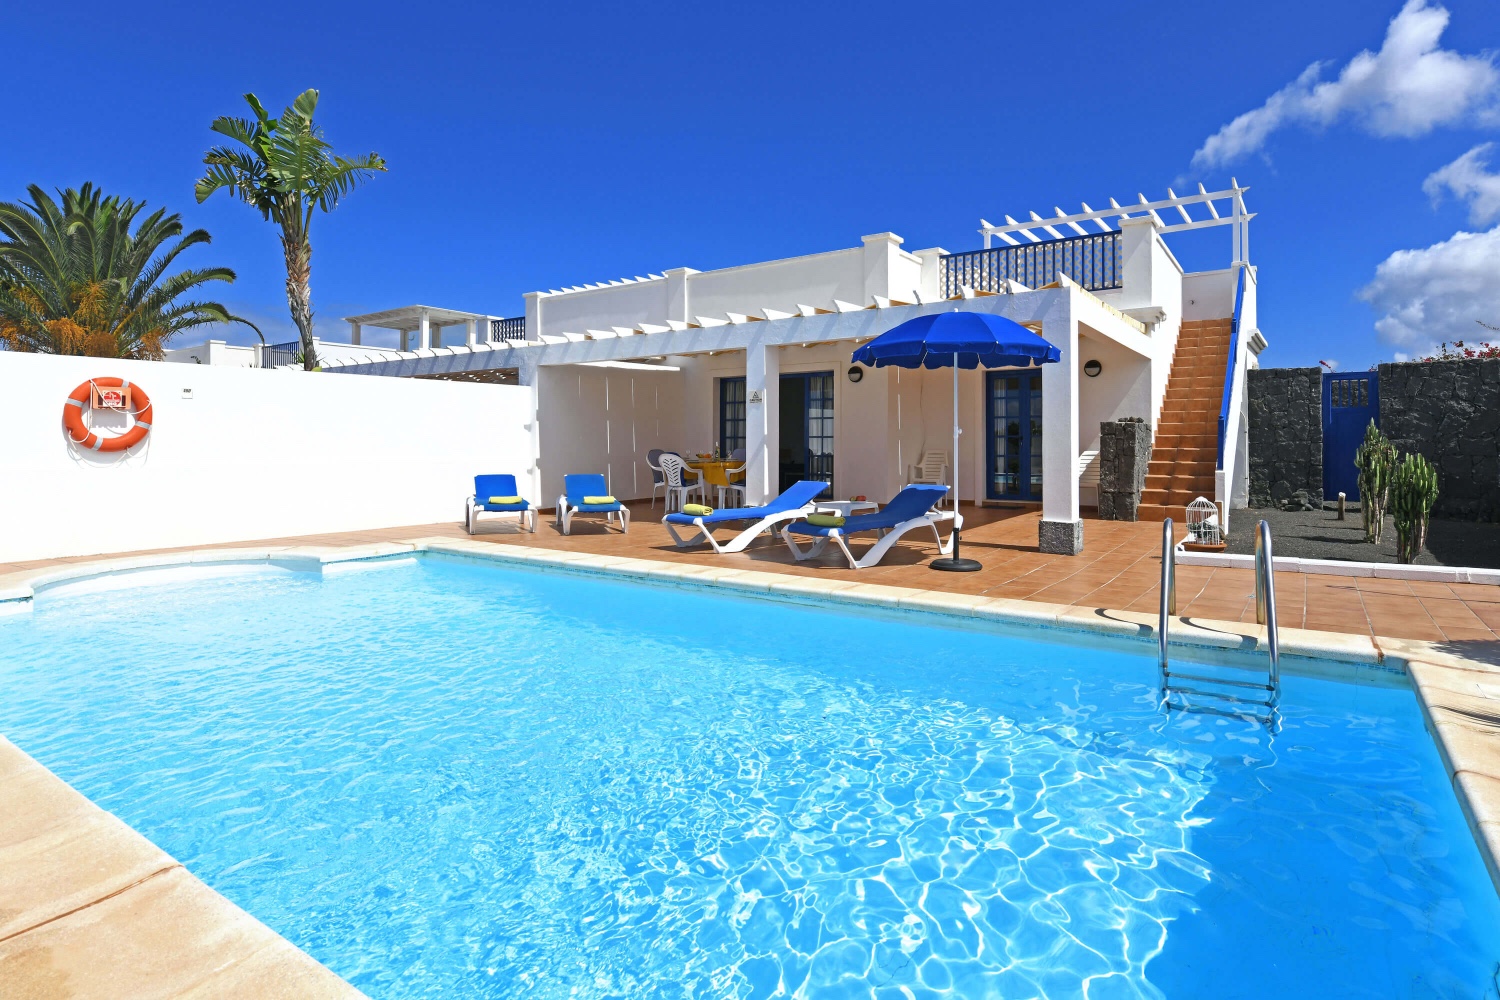 Casa de vacaciones de estilo marítimo y con piscina privada en un área residencial cerca de la zona de Playa Blanca